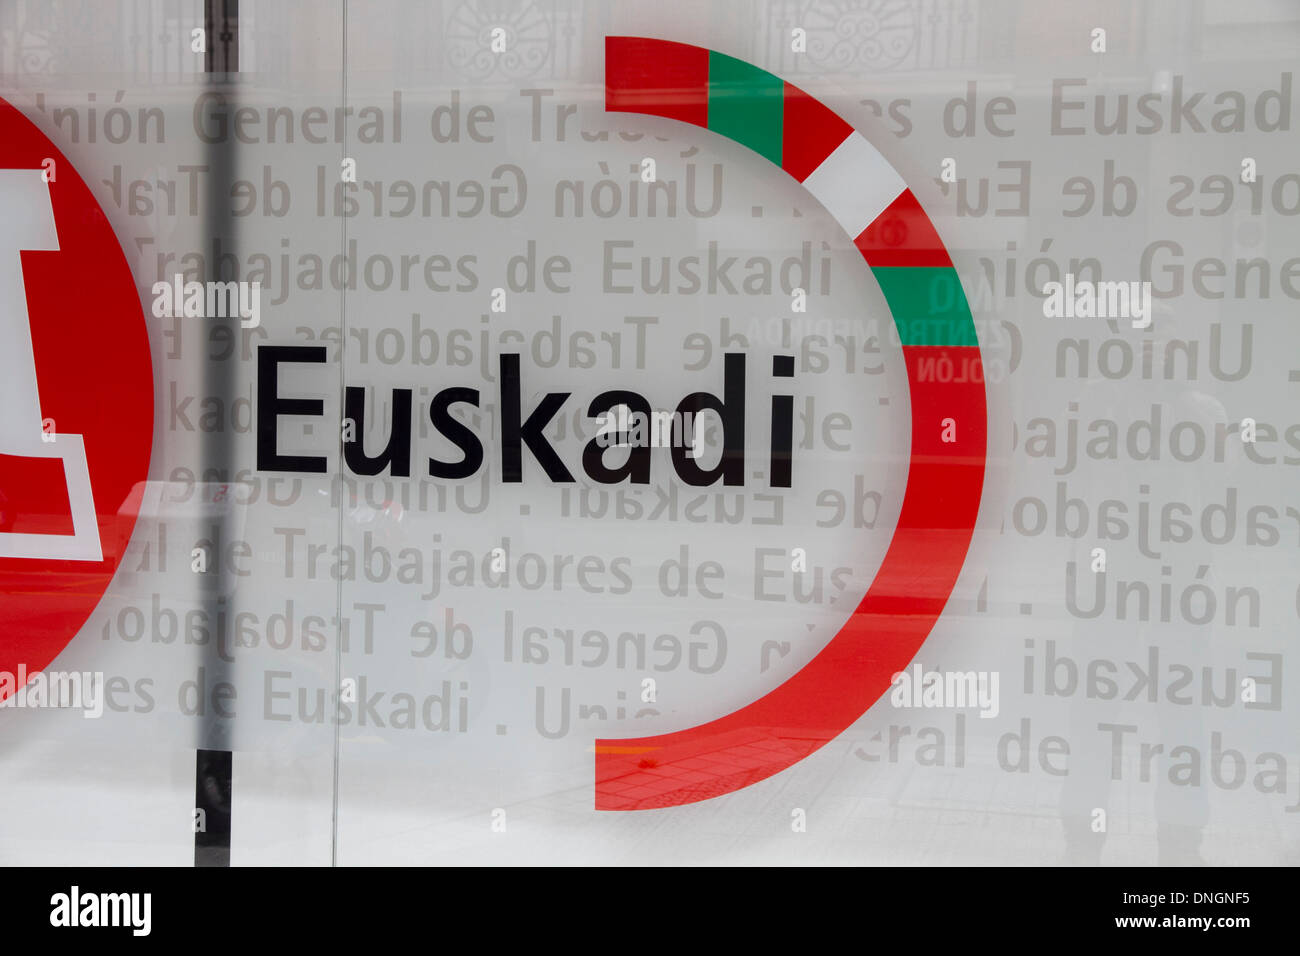 Basque Euskara Pais Vasco Basque Country Spain Europe Stock Photo